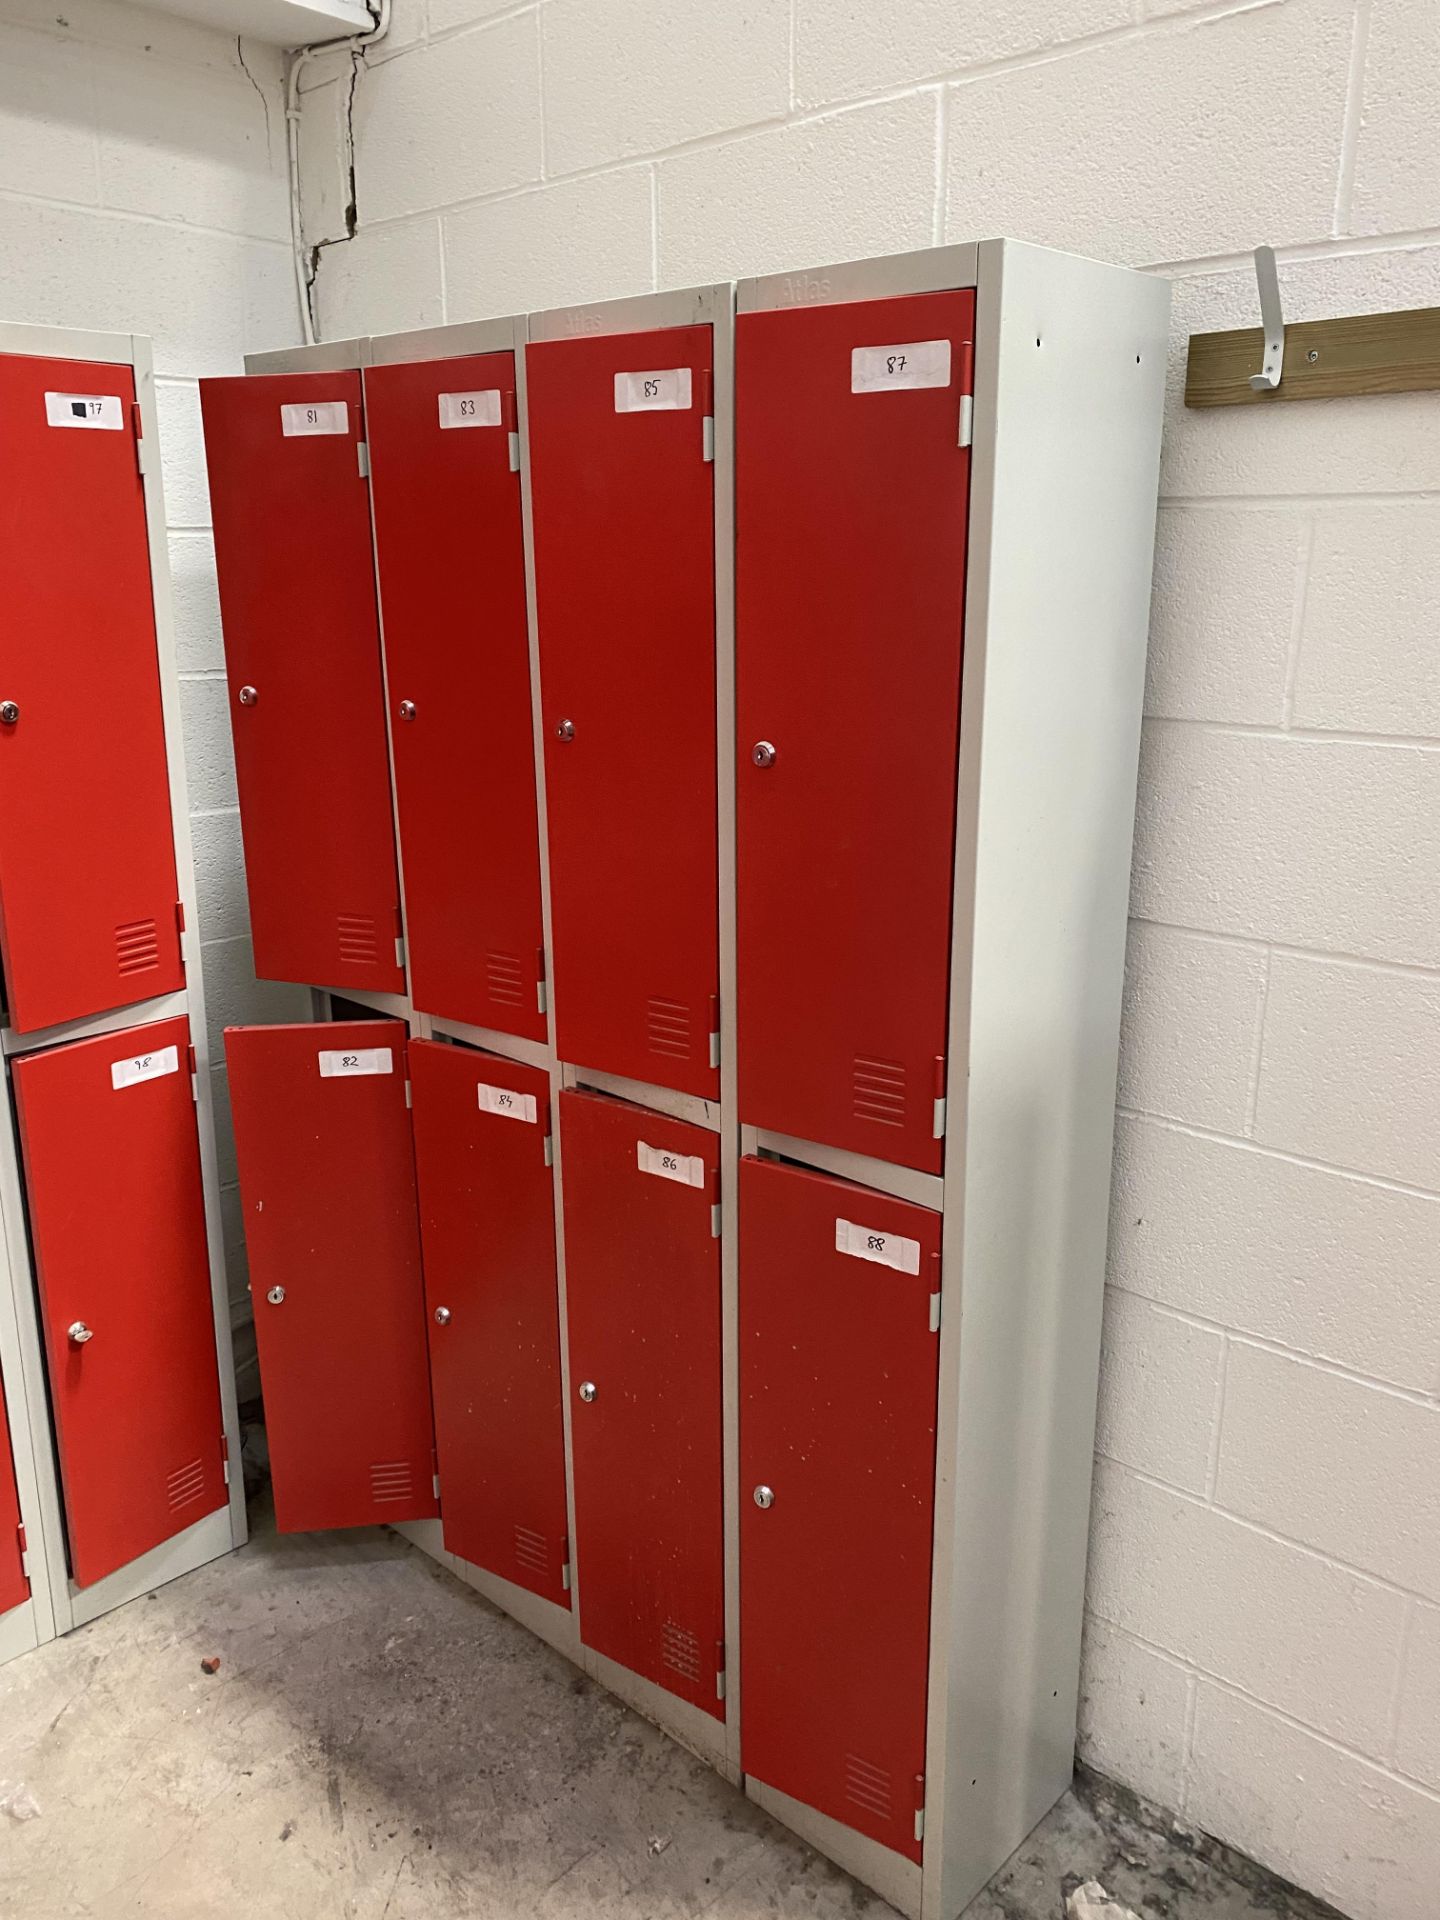 23 No. double door personell lockers, doors opened and unlocked - Image 2 of 7